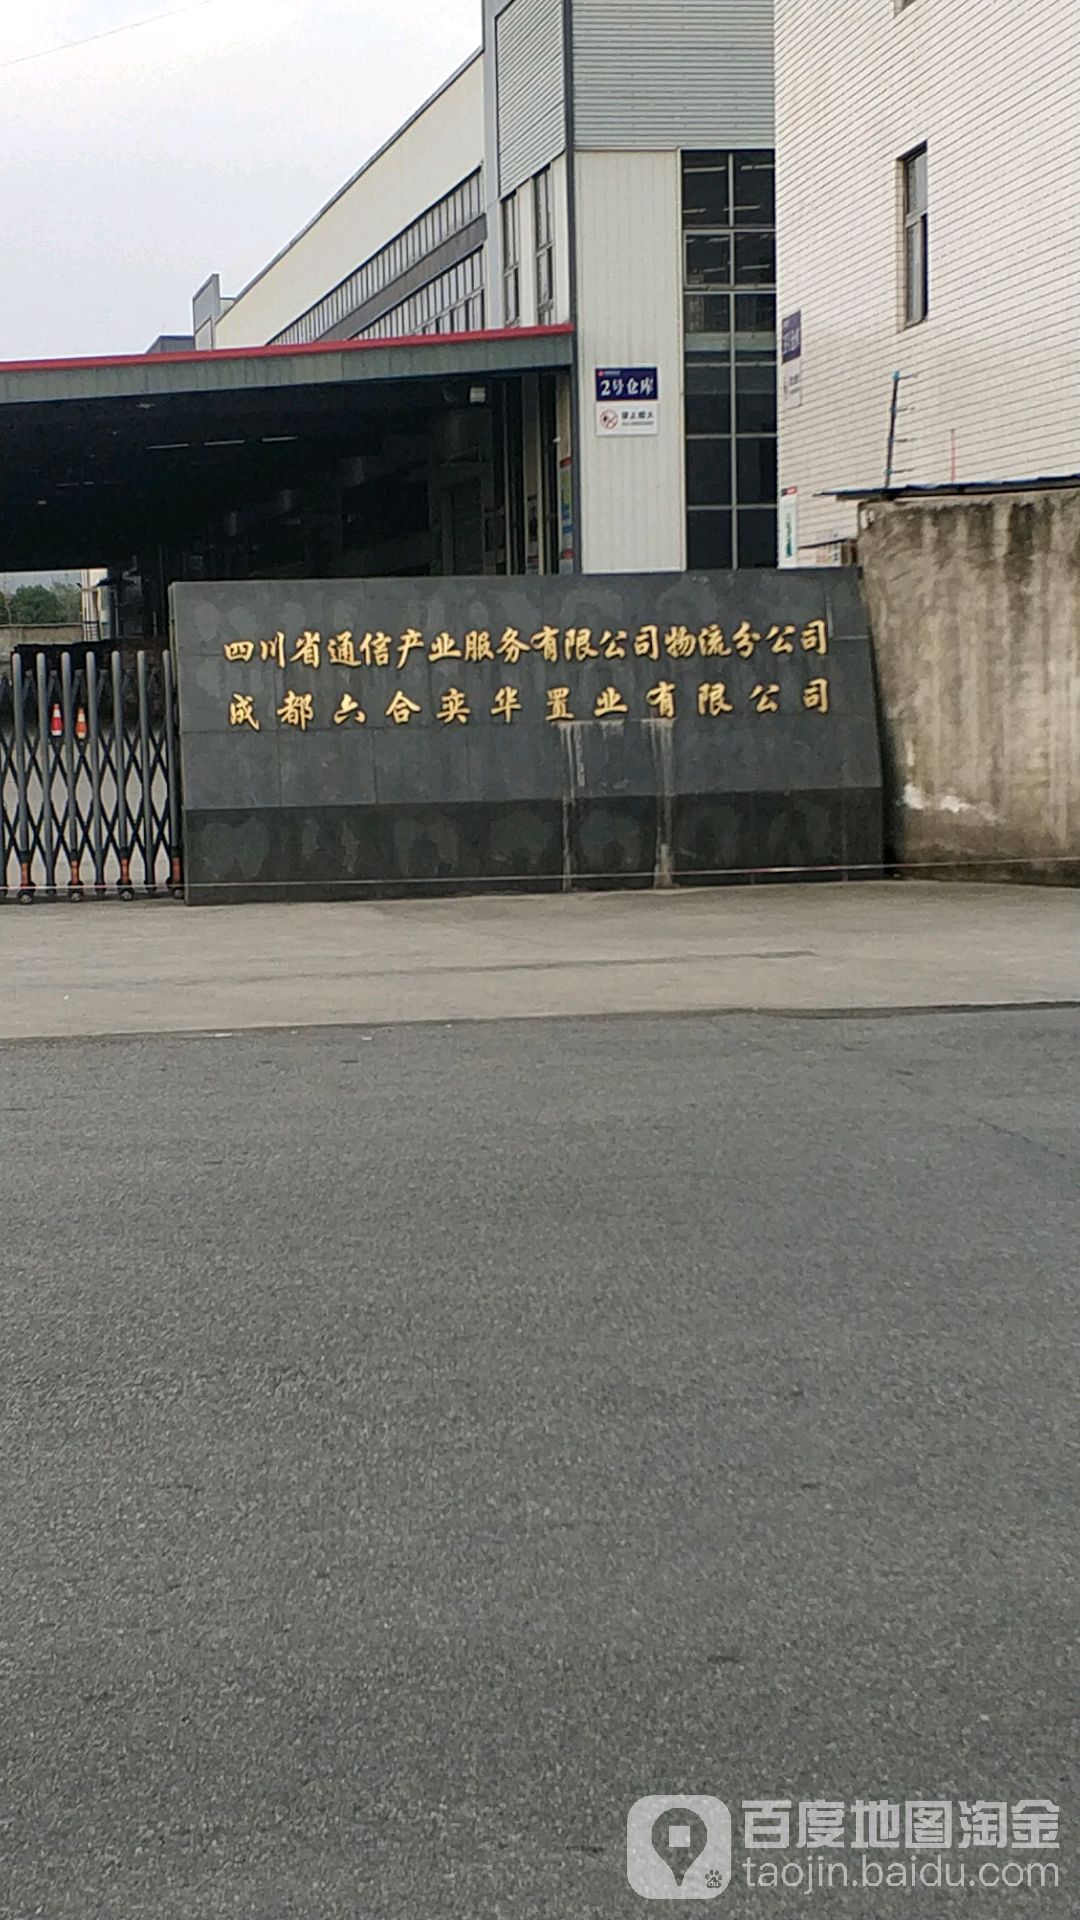 四川省通信產業服務有限公司物流分公司